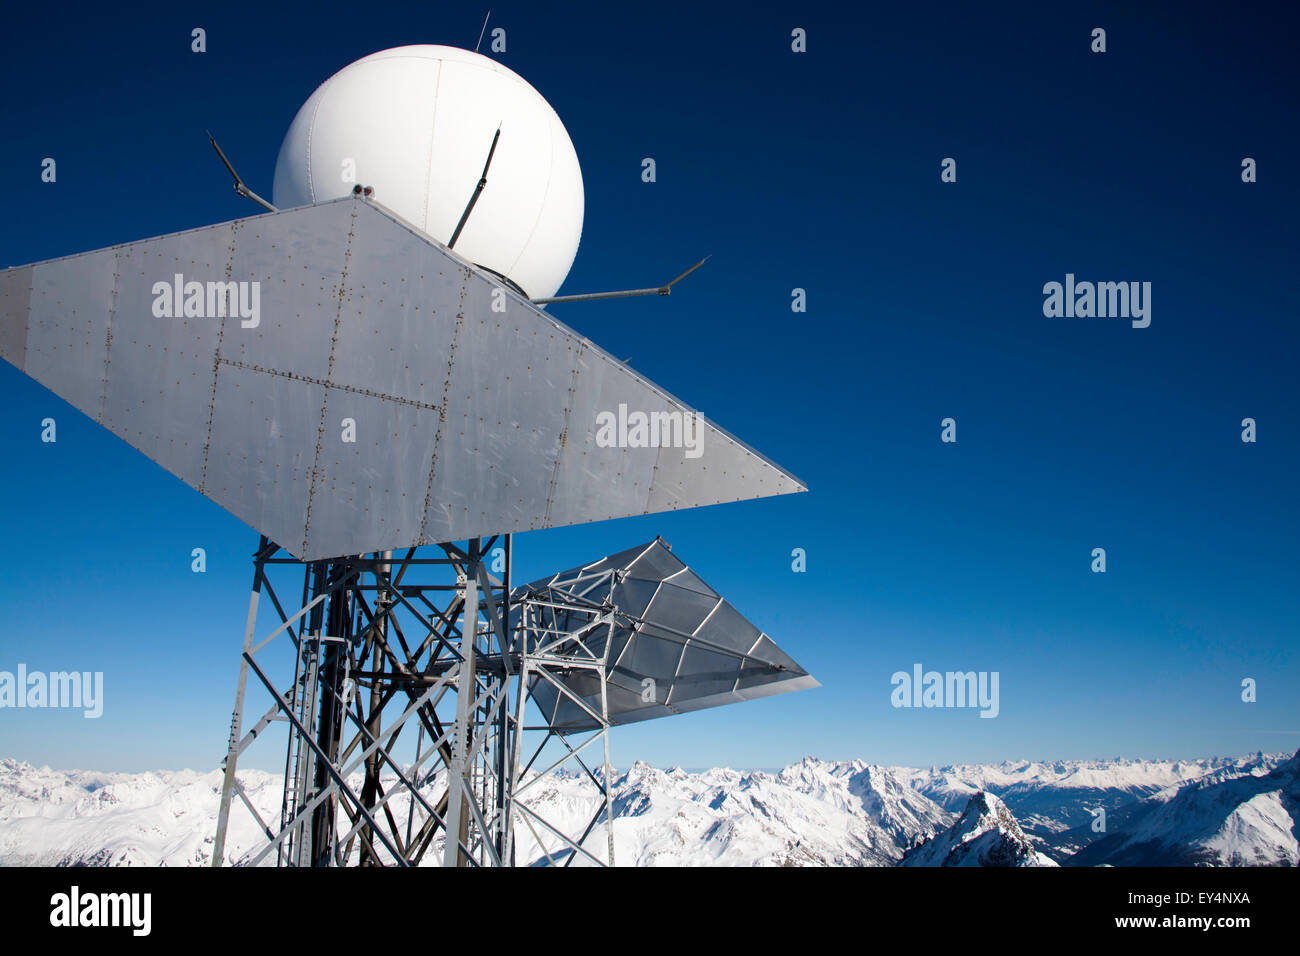 Ariels Communications et le sommet du mât de la station Valluga St Anton Arlberg Autriche Banque D'Images